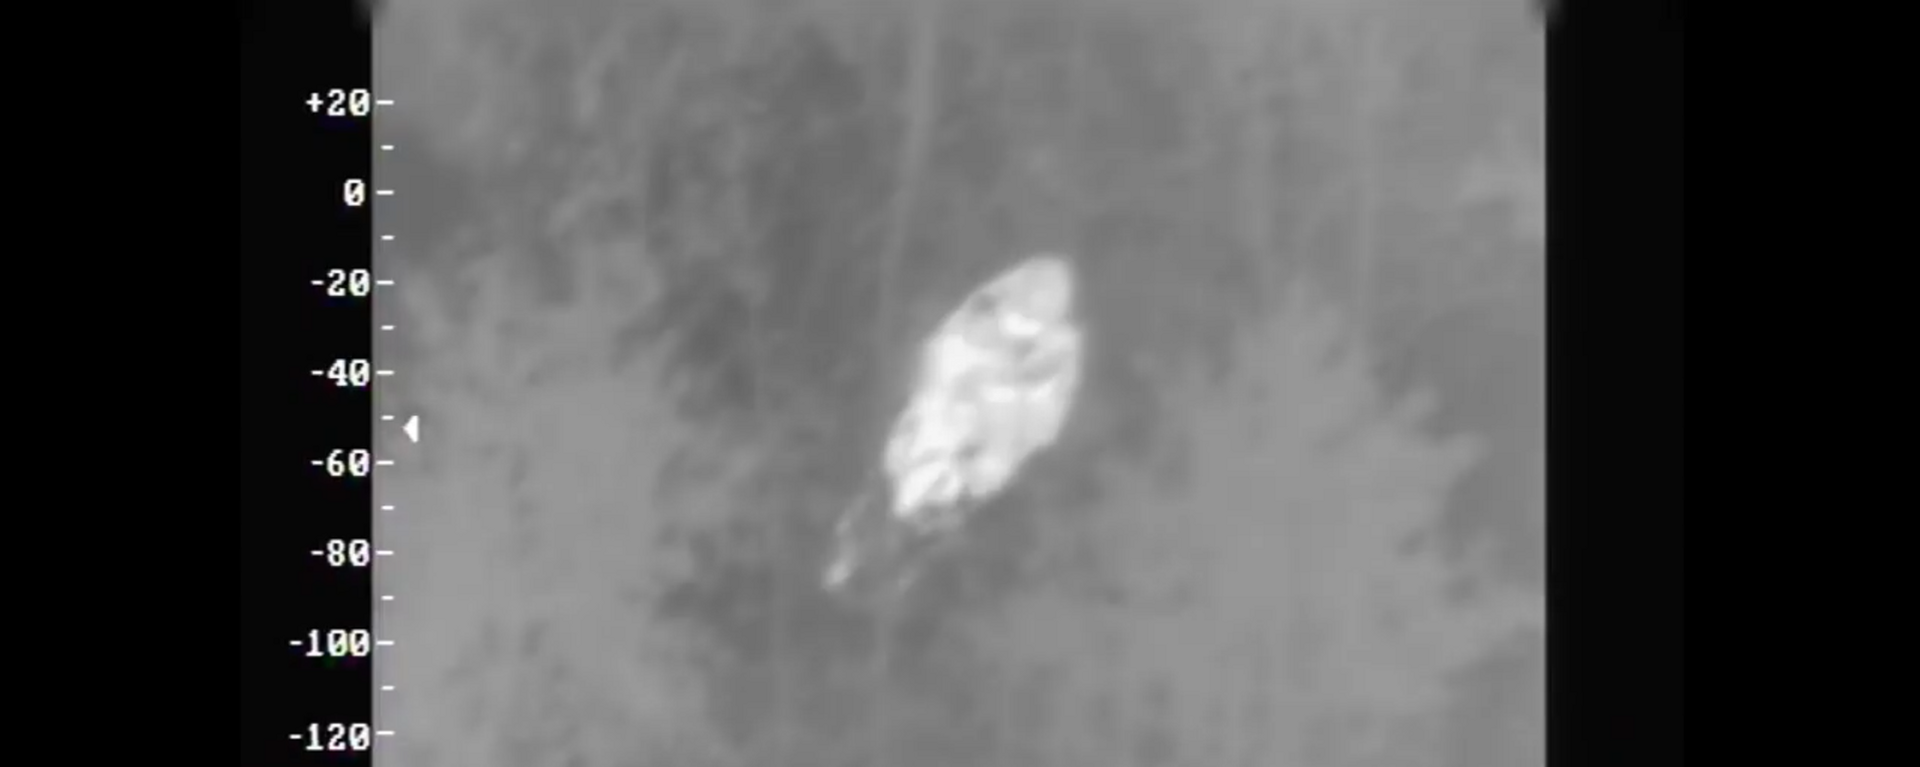 Литовские пограничники нашли заблудившуюся в лесу бабушку с помощью вертолета - Sputnik Lietuva, 1920, 10.09.2021